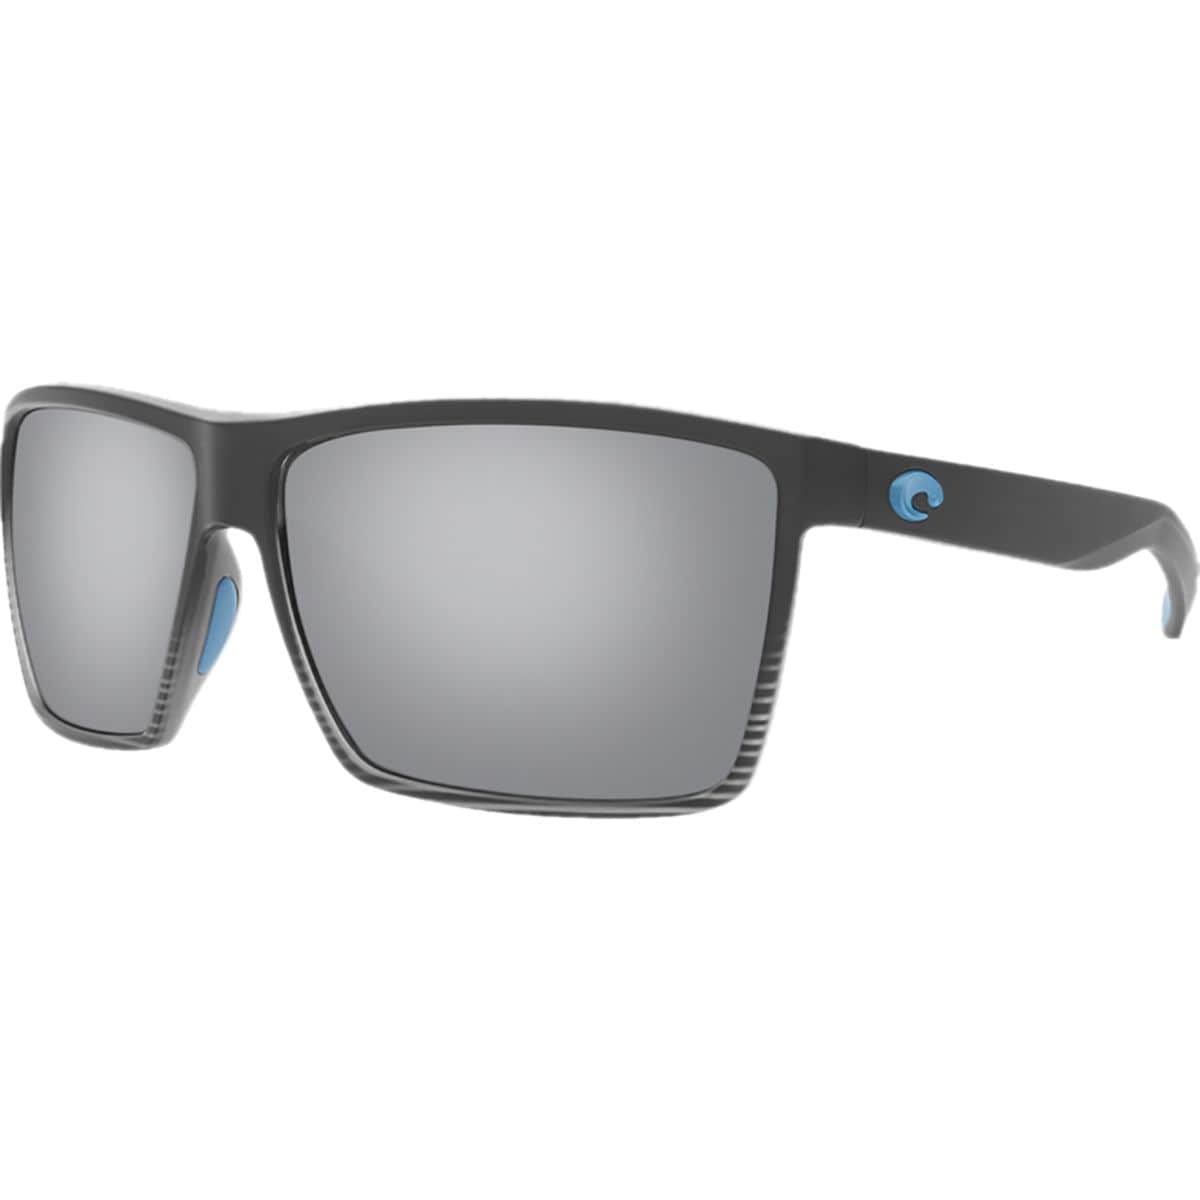 Pre-owned Costa Del Mar Costa Rincon 580g Polarized Sunglasses In Matte Smoke Crystal Fade Frame